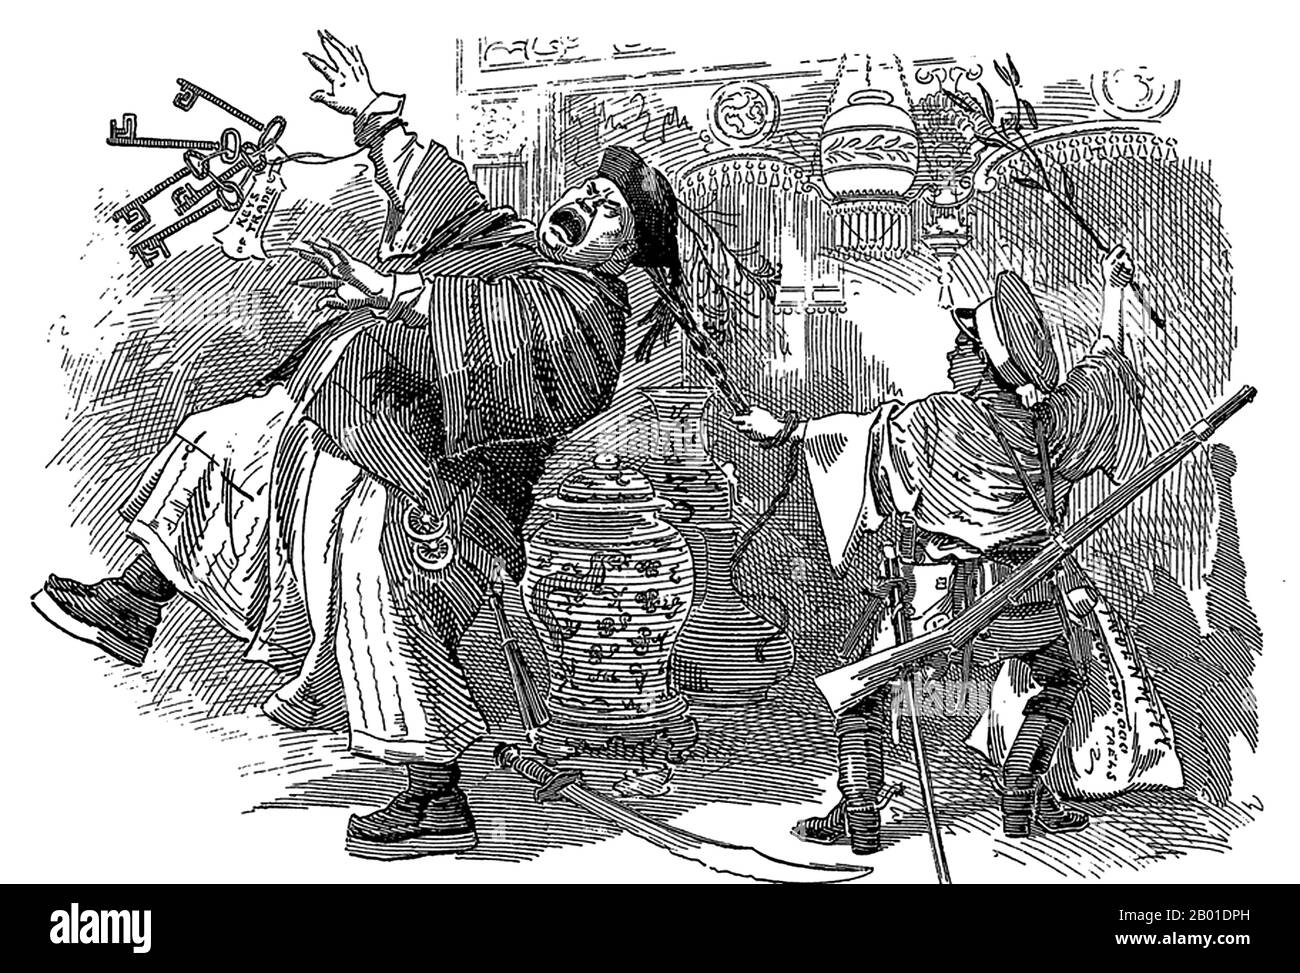 China/UK: „JAP in a China Shop“. Satirischer britischer Karikatur des chinesisch-japanischen Krieges (1. August 1894 - 17. April 1895), in dem China besiegt und gezwungen wurde, Territorien abzutreten und eine große Entschädigung von 340 Millionen Silbertaels an Japan zu zahlen. Abbildung von Punch, 27. April 1895. "Jetzt öffne deinen Laden und gib mir die Schlüssel!" Zum Zeitpunkt des Krieges wurden die Japaner von vielen Westernern als "mutige" und nicht als imperialistische Aggressoren angesehen. Der erste chinesisch-japanische Krieg wurde zwischen der Qing-Dynastie China und Meiji Japan geführt, vor allem über die Kontrolle über Korea. Stockfoto